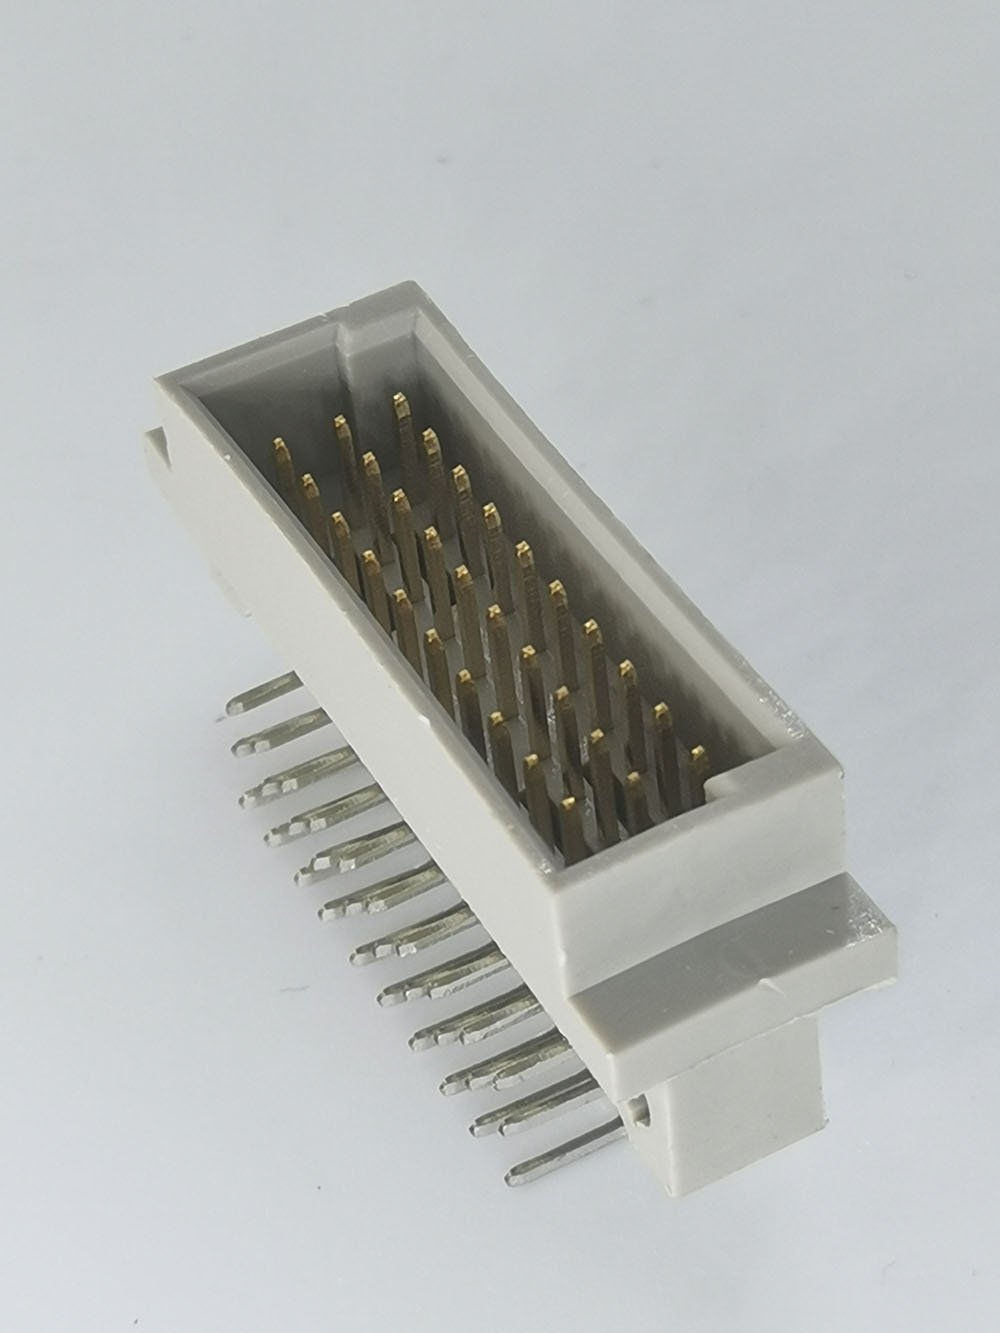 Conector de 30 piñinas tipo 1/3c DIN41612